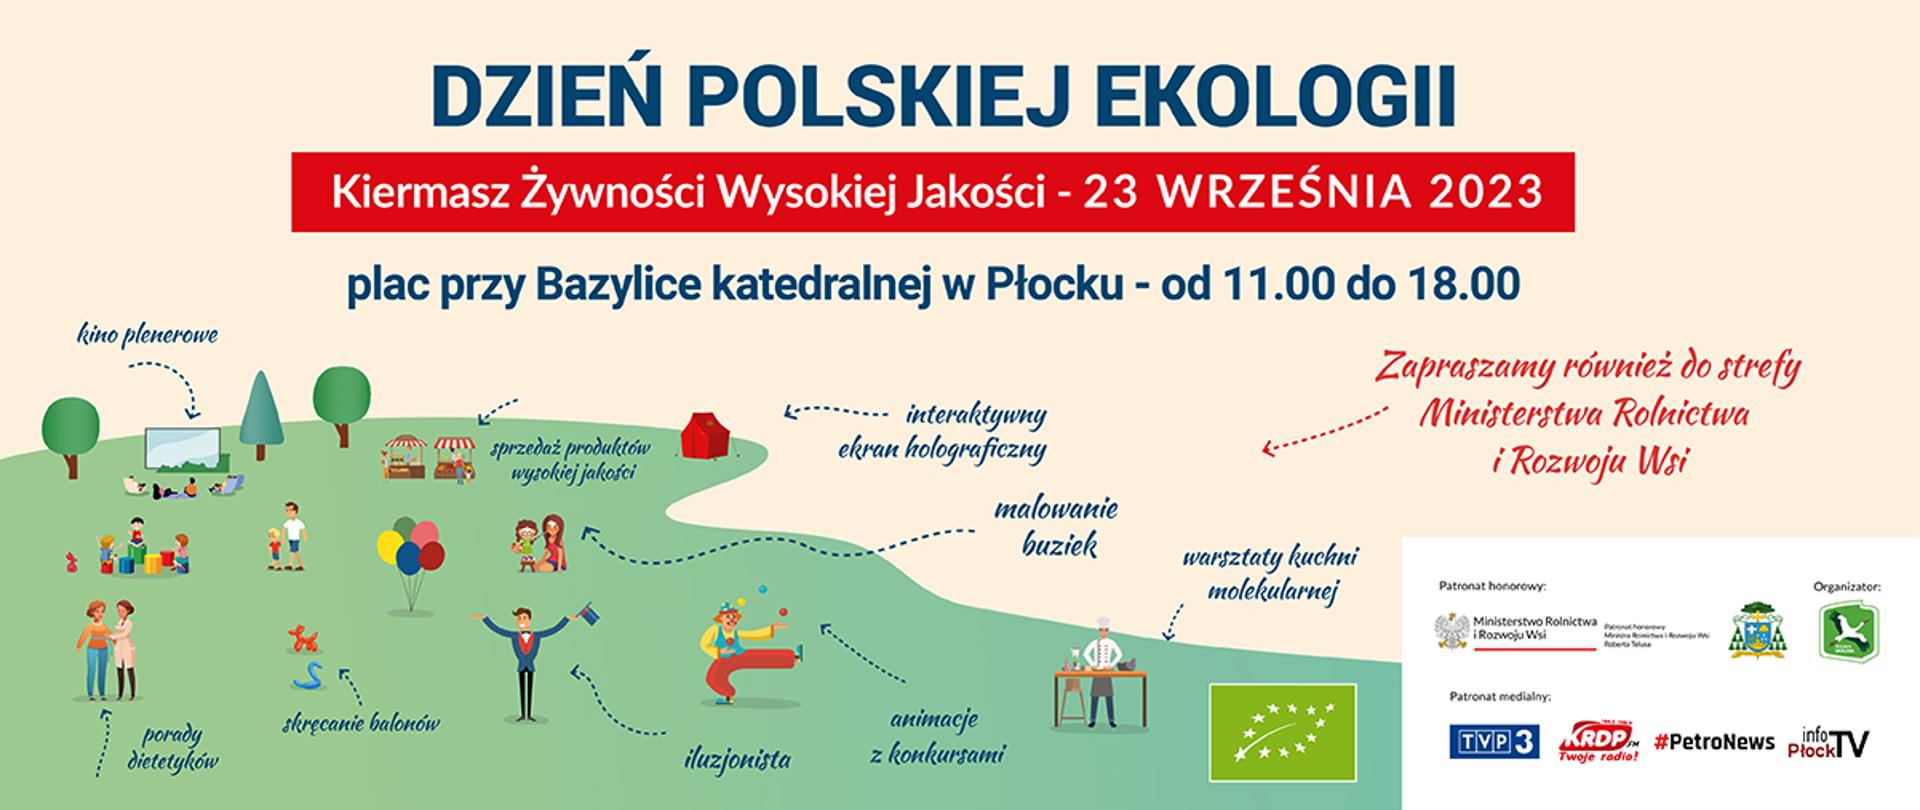 Dzień polskiej ekologii 